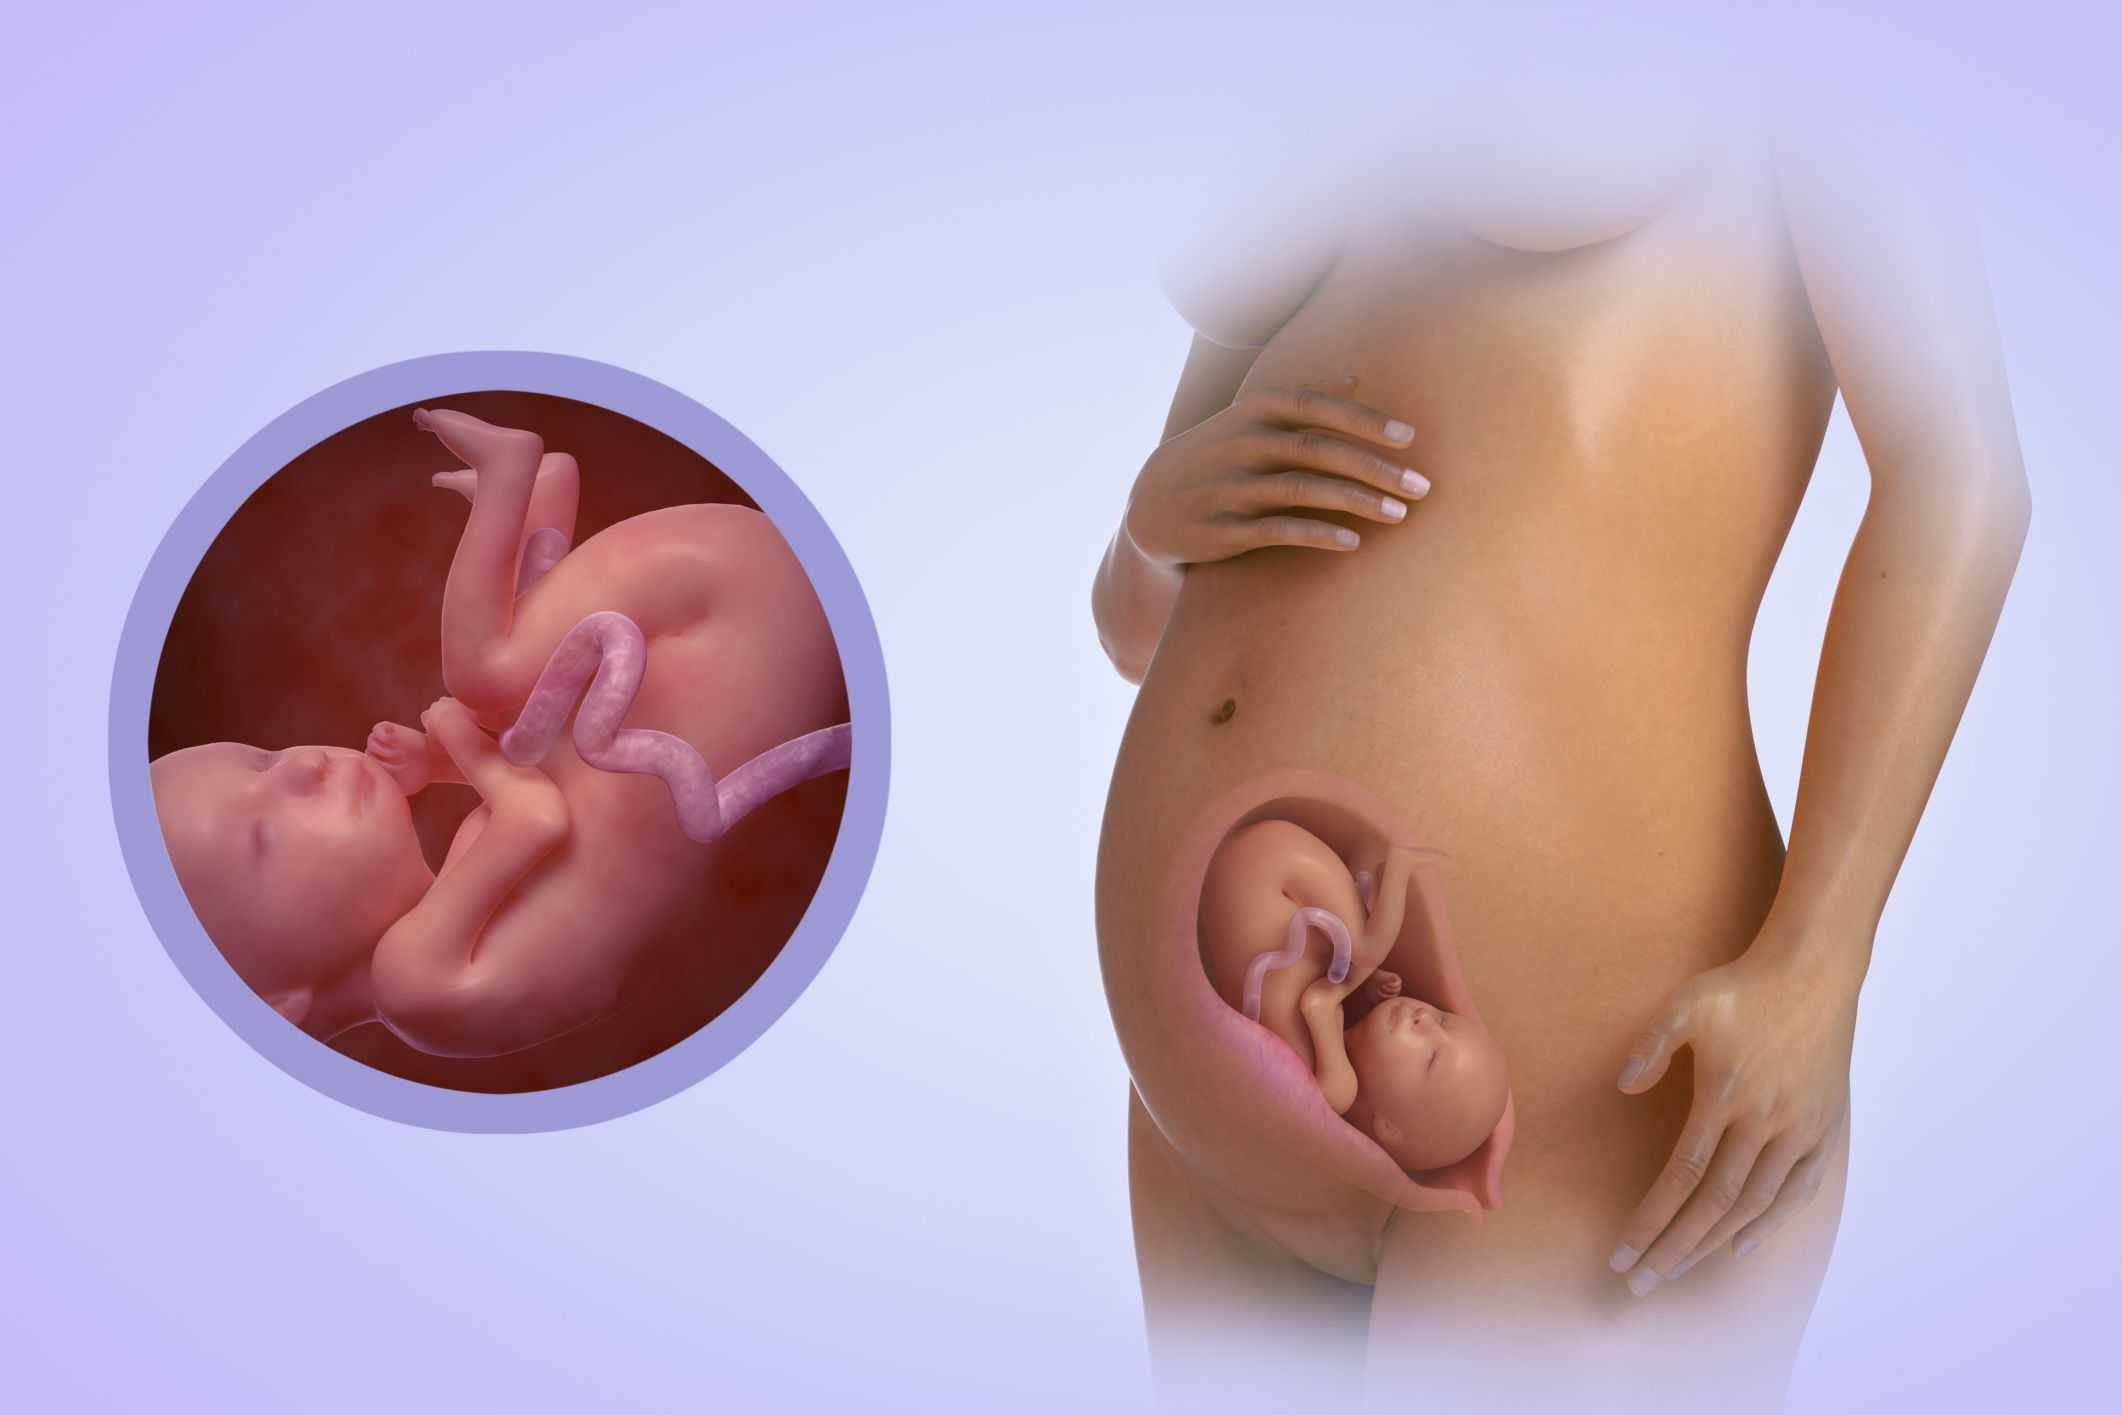 31 неделя беременности: что происходит с малышом и мамой, фото, вес плода